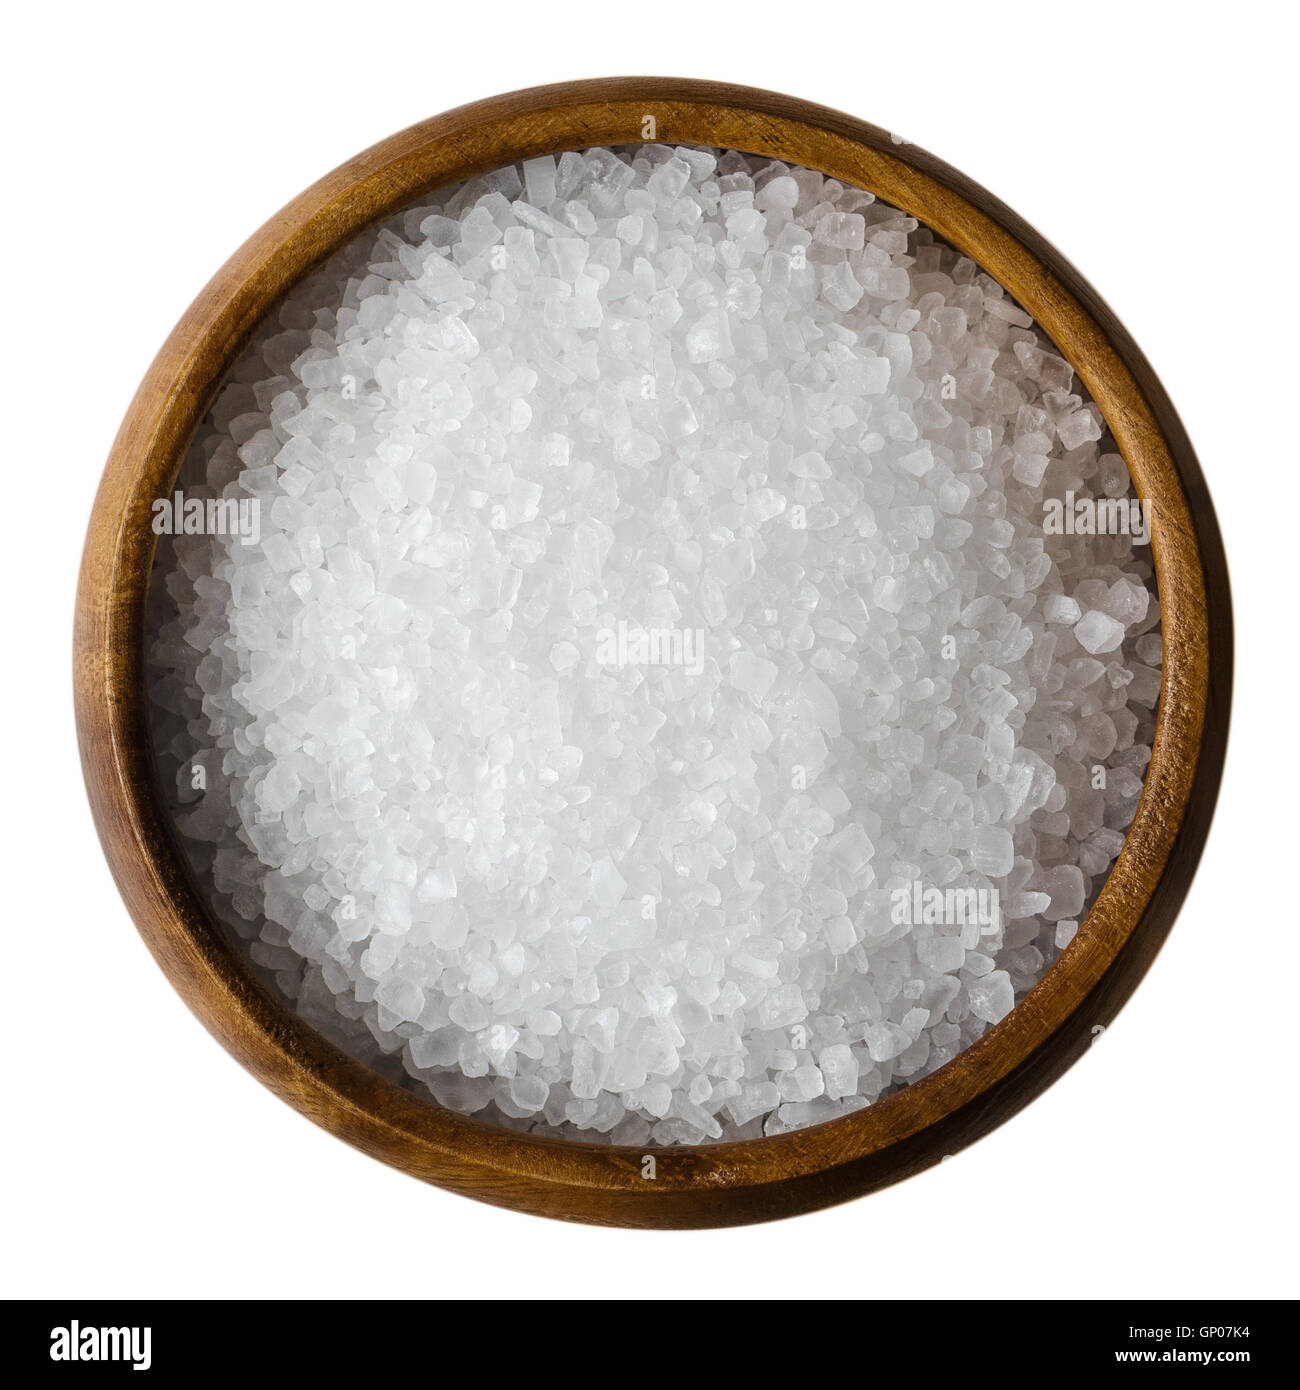 Meersalz in einer Holzschale auf weißem Hintergrund. Auch genannt Bucht Salz oder Solarsalz, in der Küche und Kosmetik verwendet wird. Stockfoto